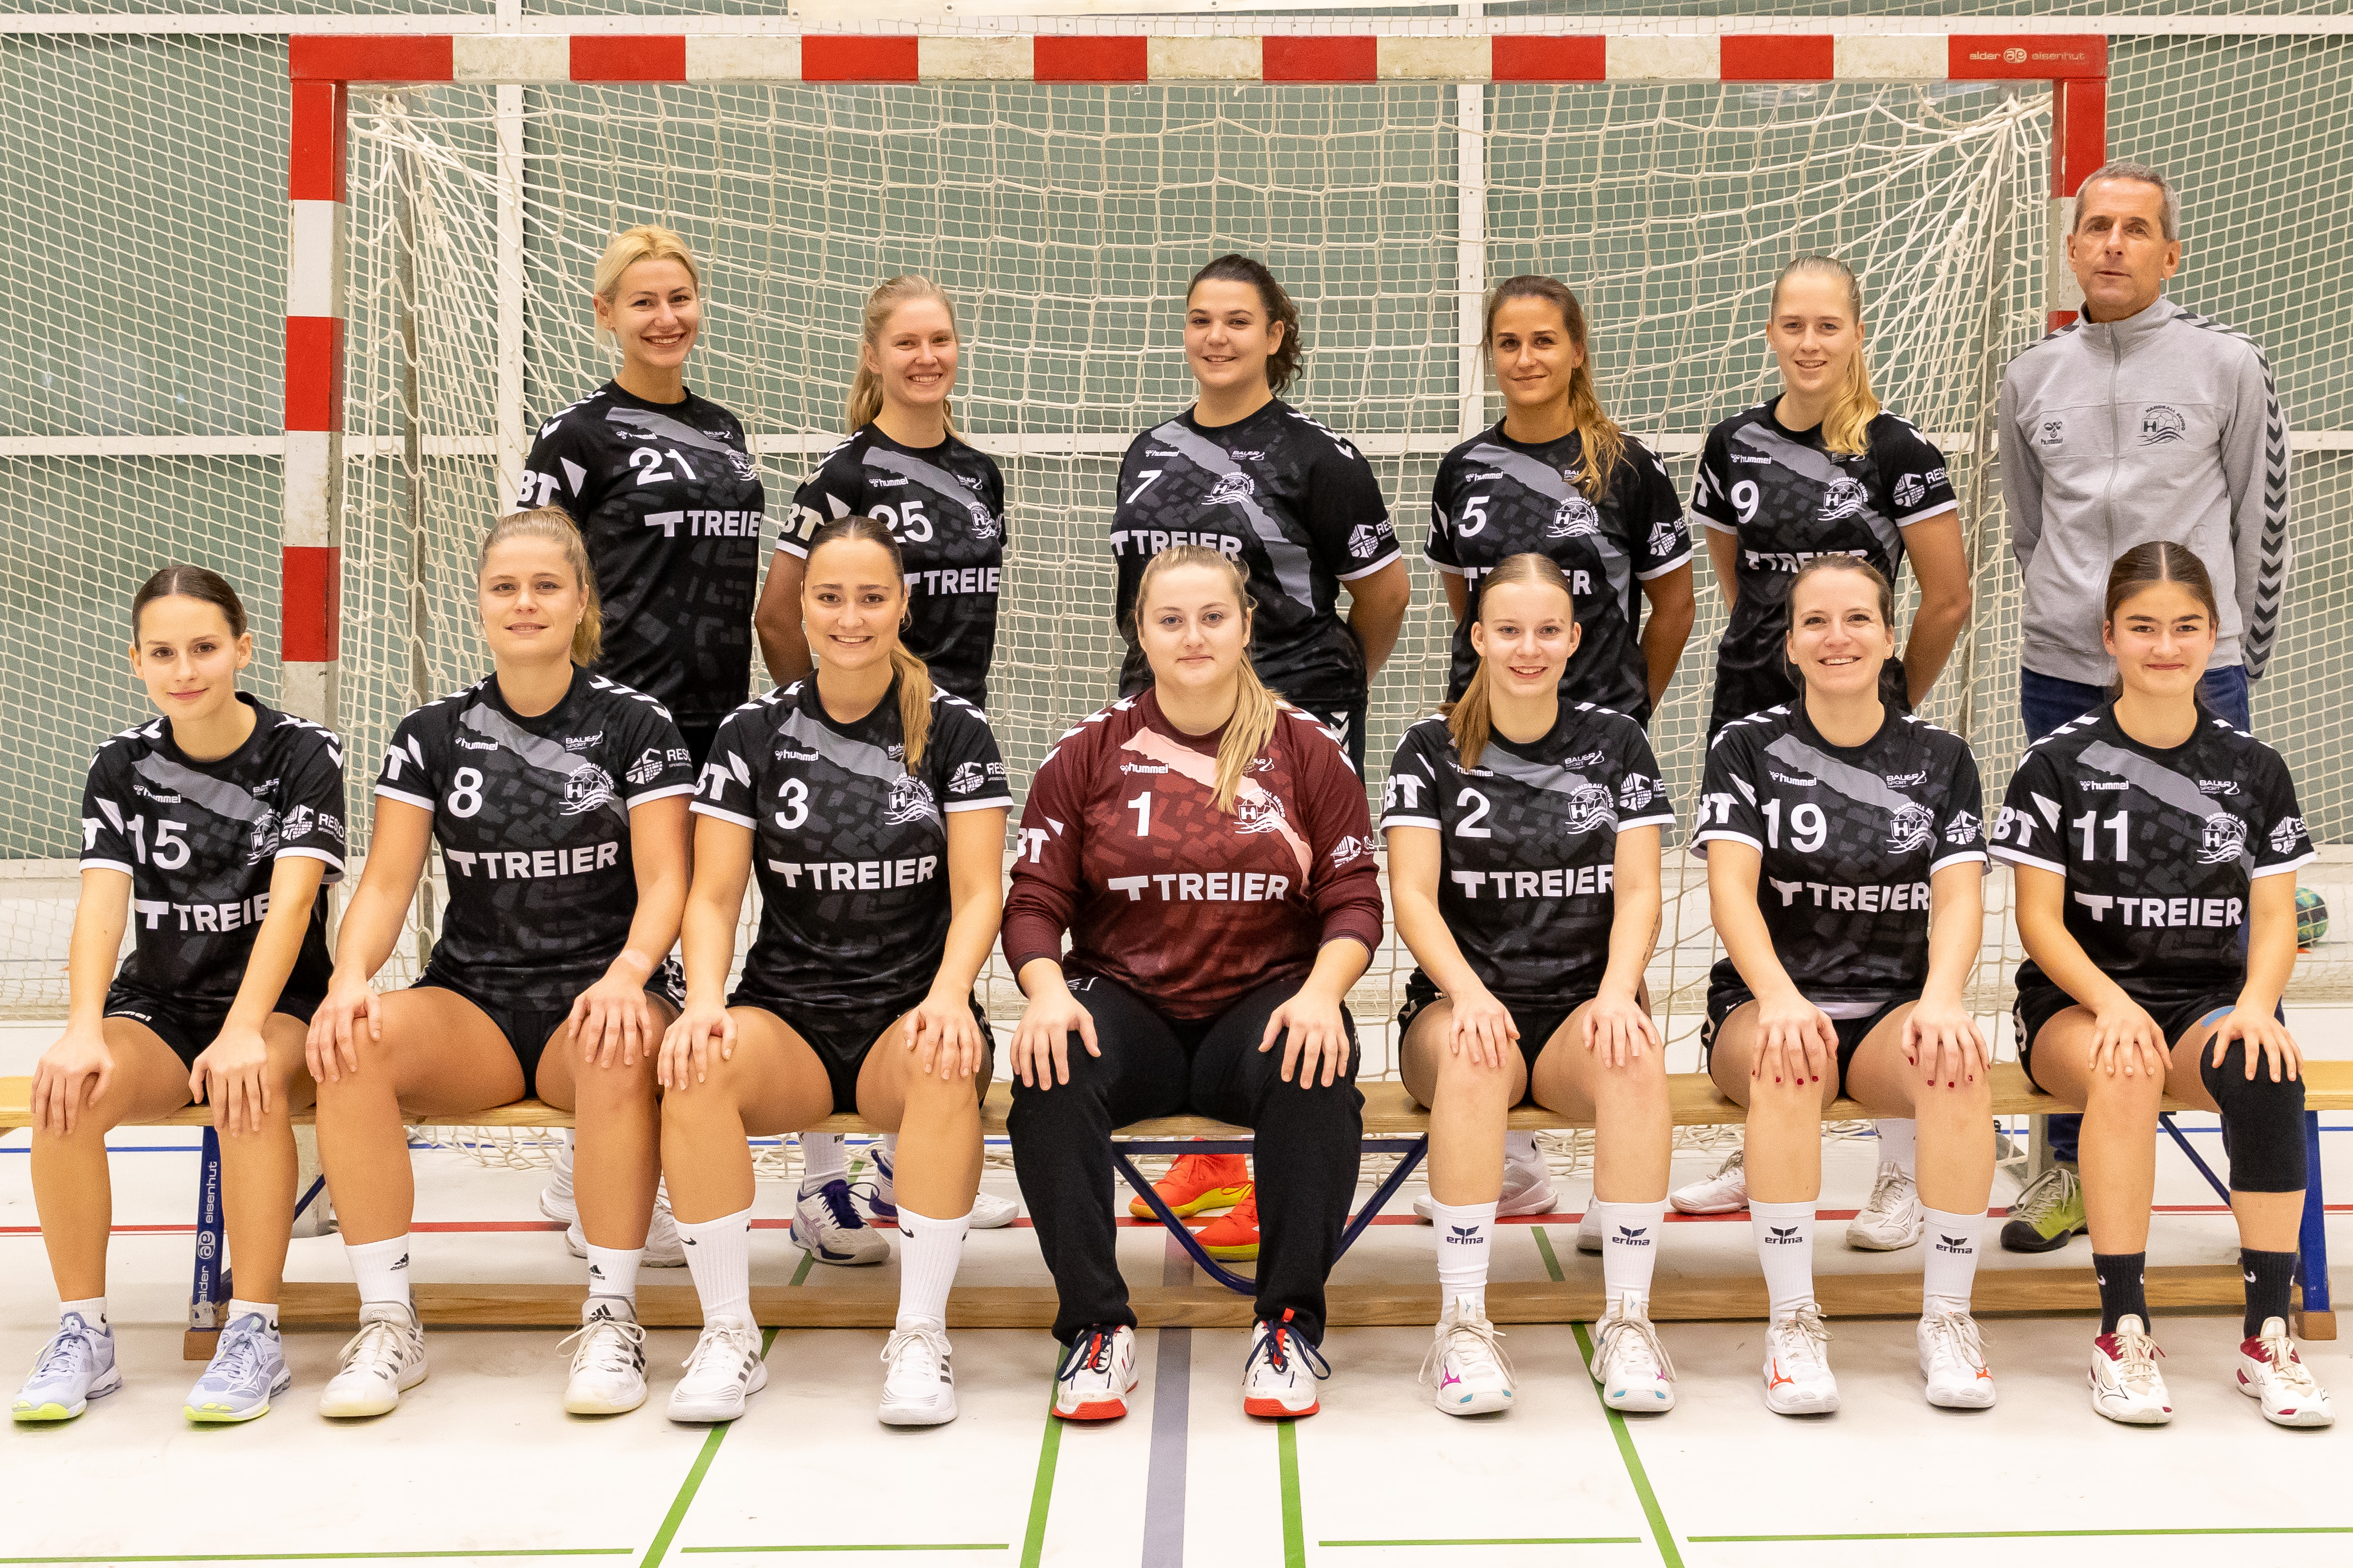 (c) Handball-brugg.ch